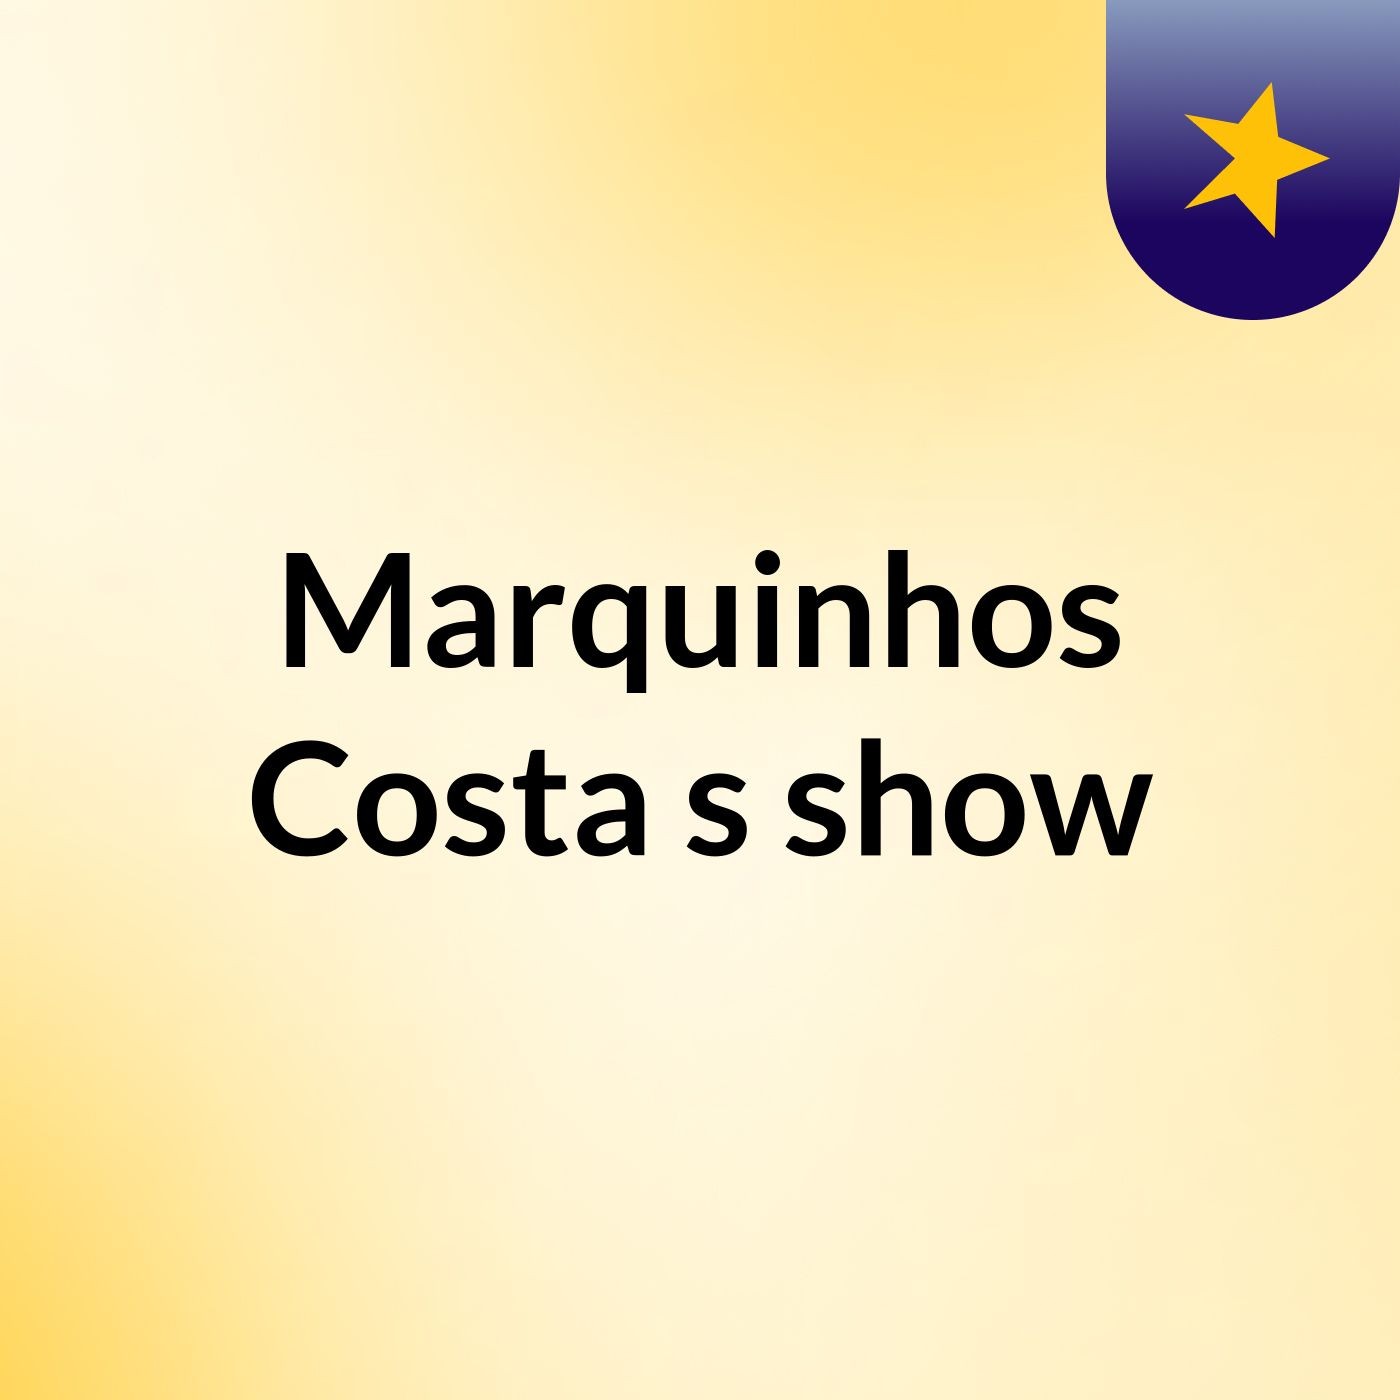 Marquinhos Costa's show